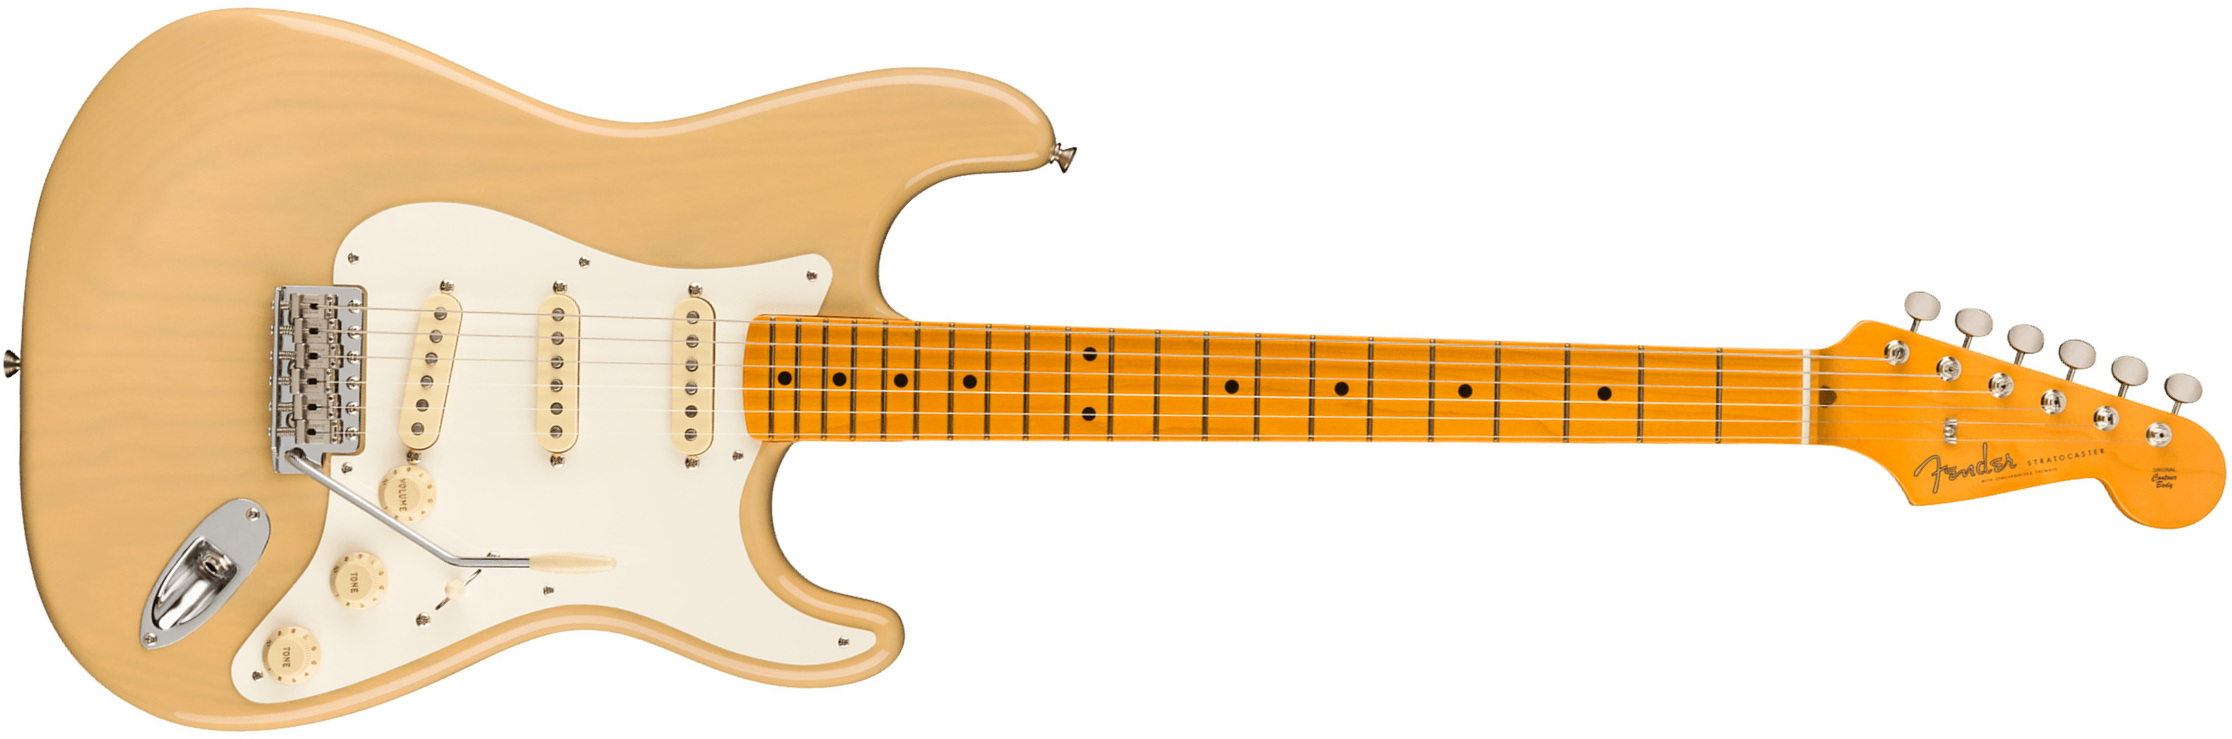 Fender Strat 1957 American Vintage Ii Usa 3s Trem Mn - Vintage Blonde - E-Gitarre in Str-Form - Main picture